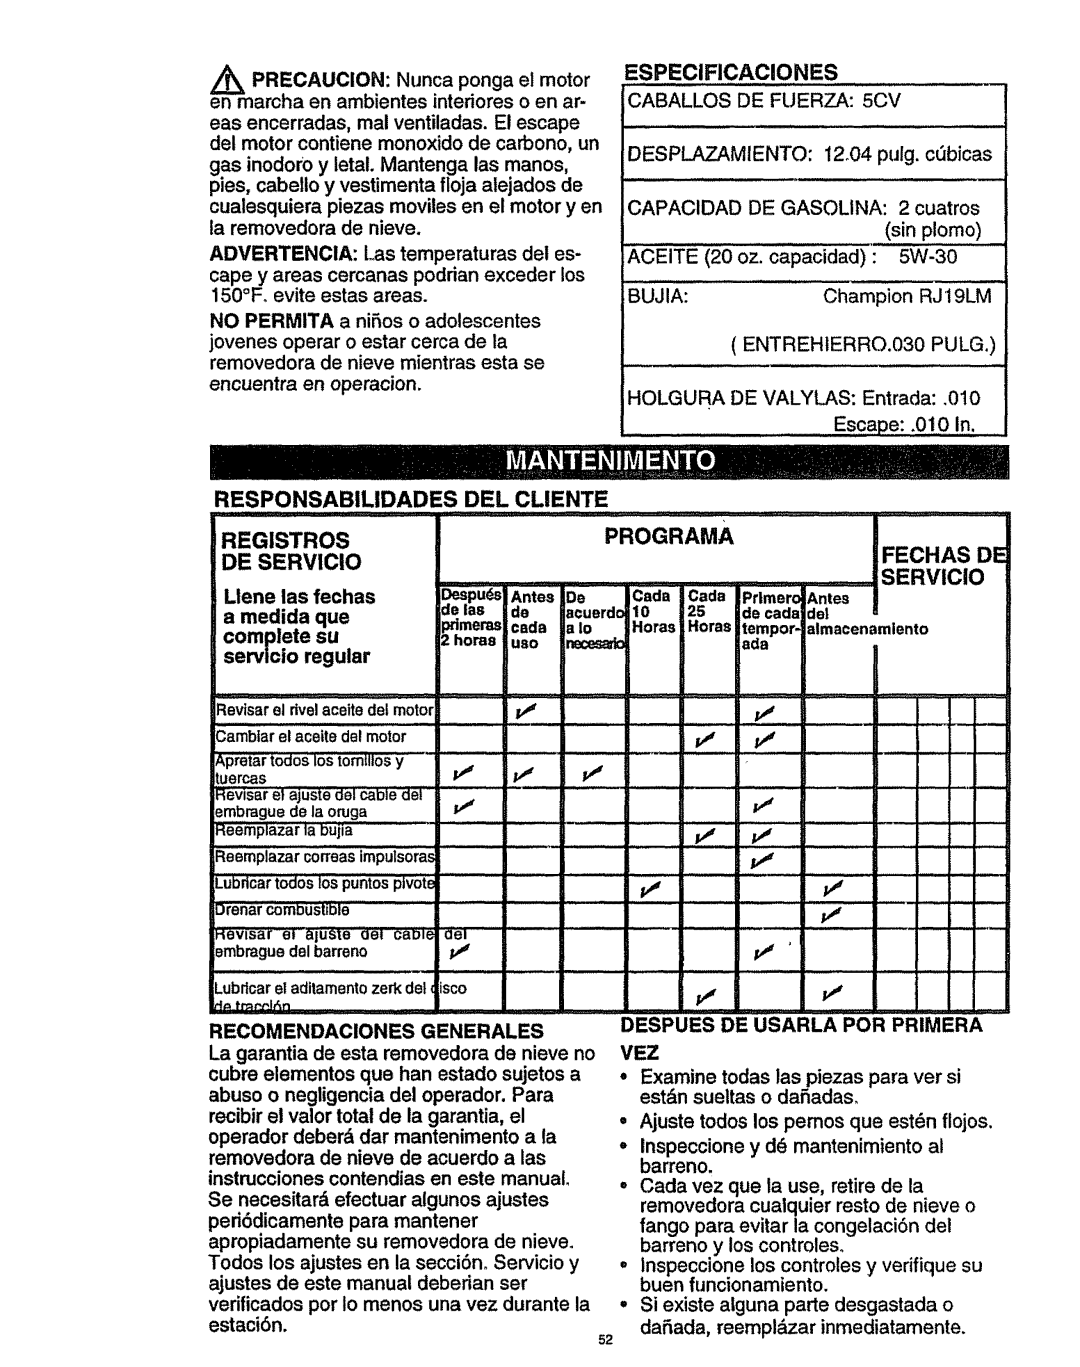 Craftsman 536.886141 manual Caballos DE Fuerza 5CV, Desplazamiento 12o04 pulg. cbicas, Recomendaciones Generales 